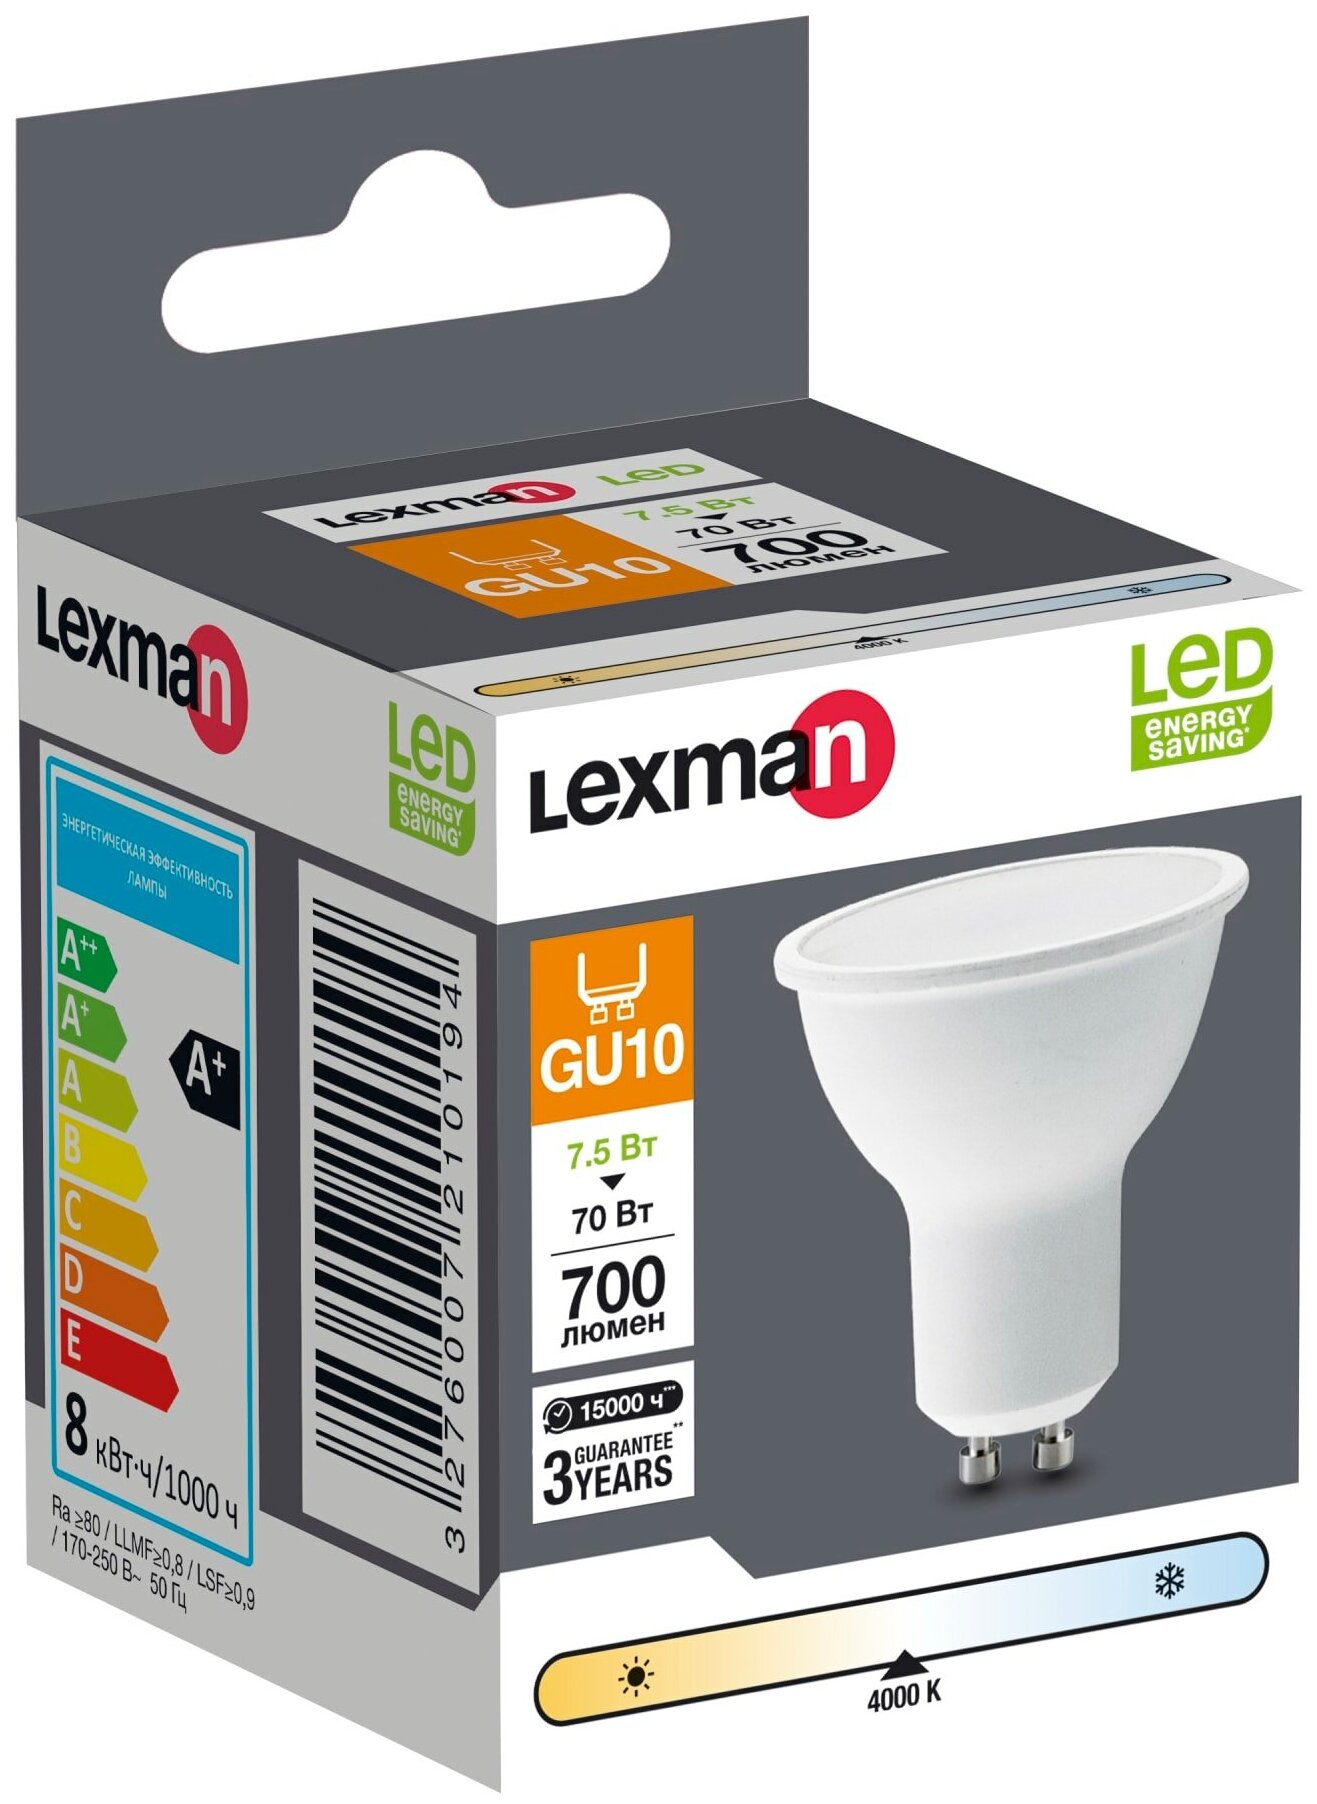 Лампа светодиодная Lexman GU10 175-250 В 8 Вт спот матовая 700 лм нейтральный белый свет - фотография № 3